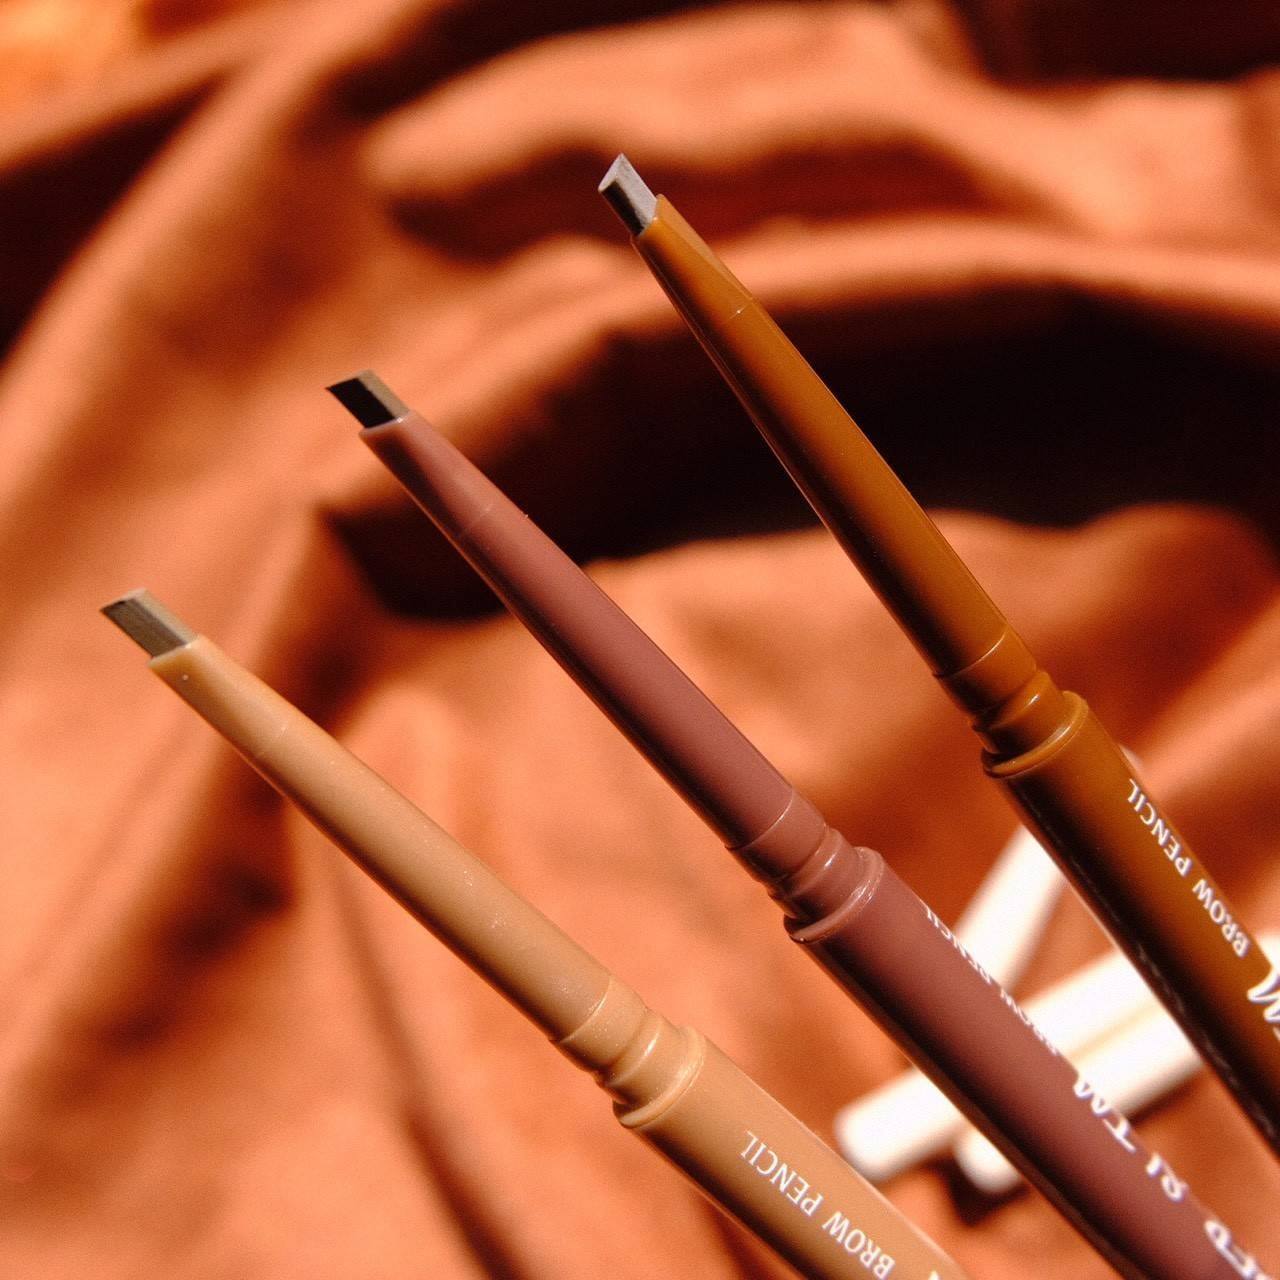 Kabuki Super Slim Brow Pencil 0.1 g. ดินสอเขียนคิ้ว ทรงสลิม เขียนง่าย ได้เส้นคม พร้อมแปรงปัดคิ้ว จัดแต่งทรงคิ้วให้สวยงาม  ดินสอเขียนคิ้วเส้นเล็กคมเพียง 1.5 มิล เขียนลื่นง่าย ให้คุณวางโครงคิ้วได้อย่างที่ต้องการ 